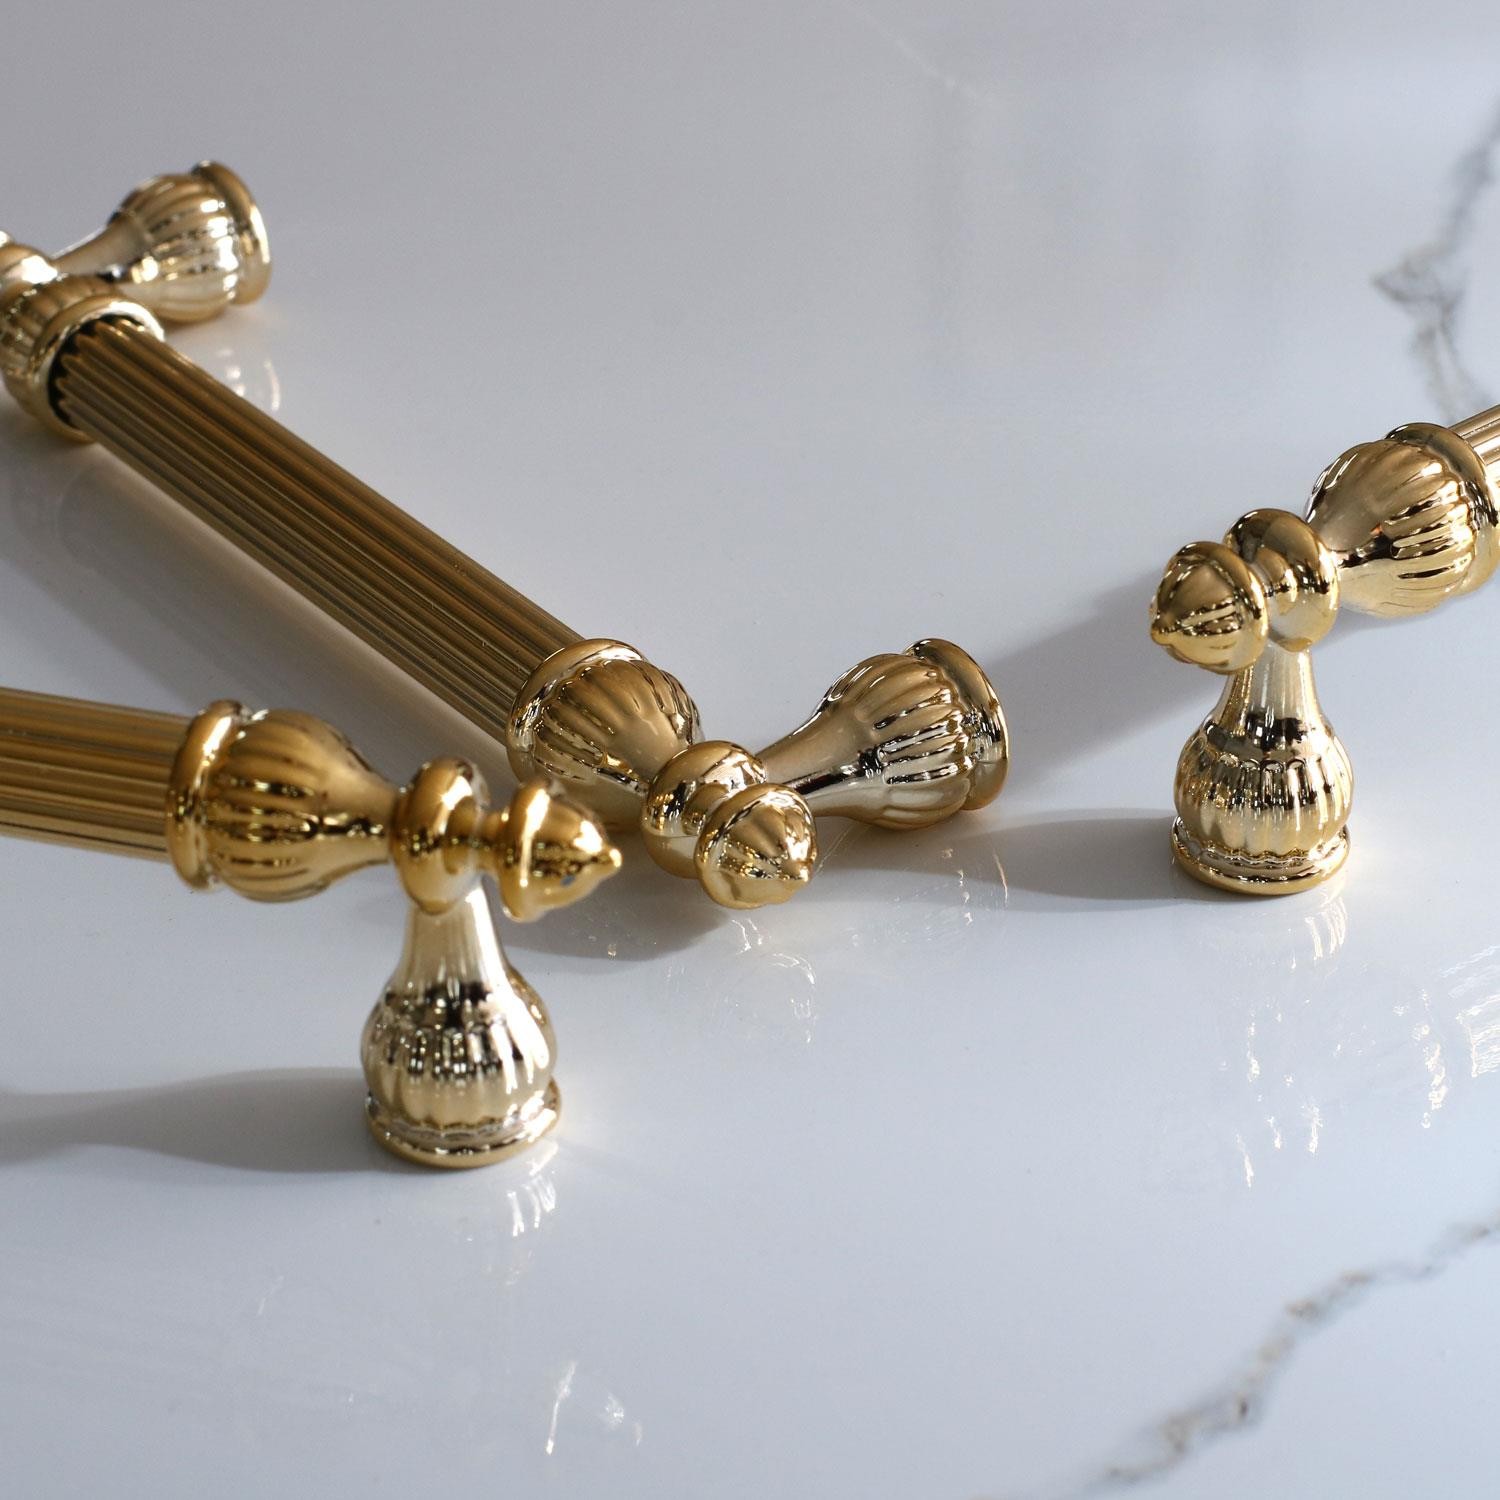 Şah Kulp 320 mm Gold Altın Metal Mobilya Mutfak Dolabı Çekmece Dolap Kulpları Kapak Kulpu Kulbu